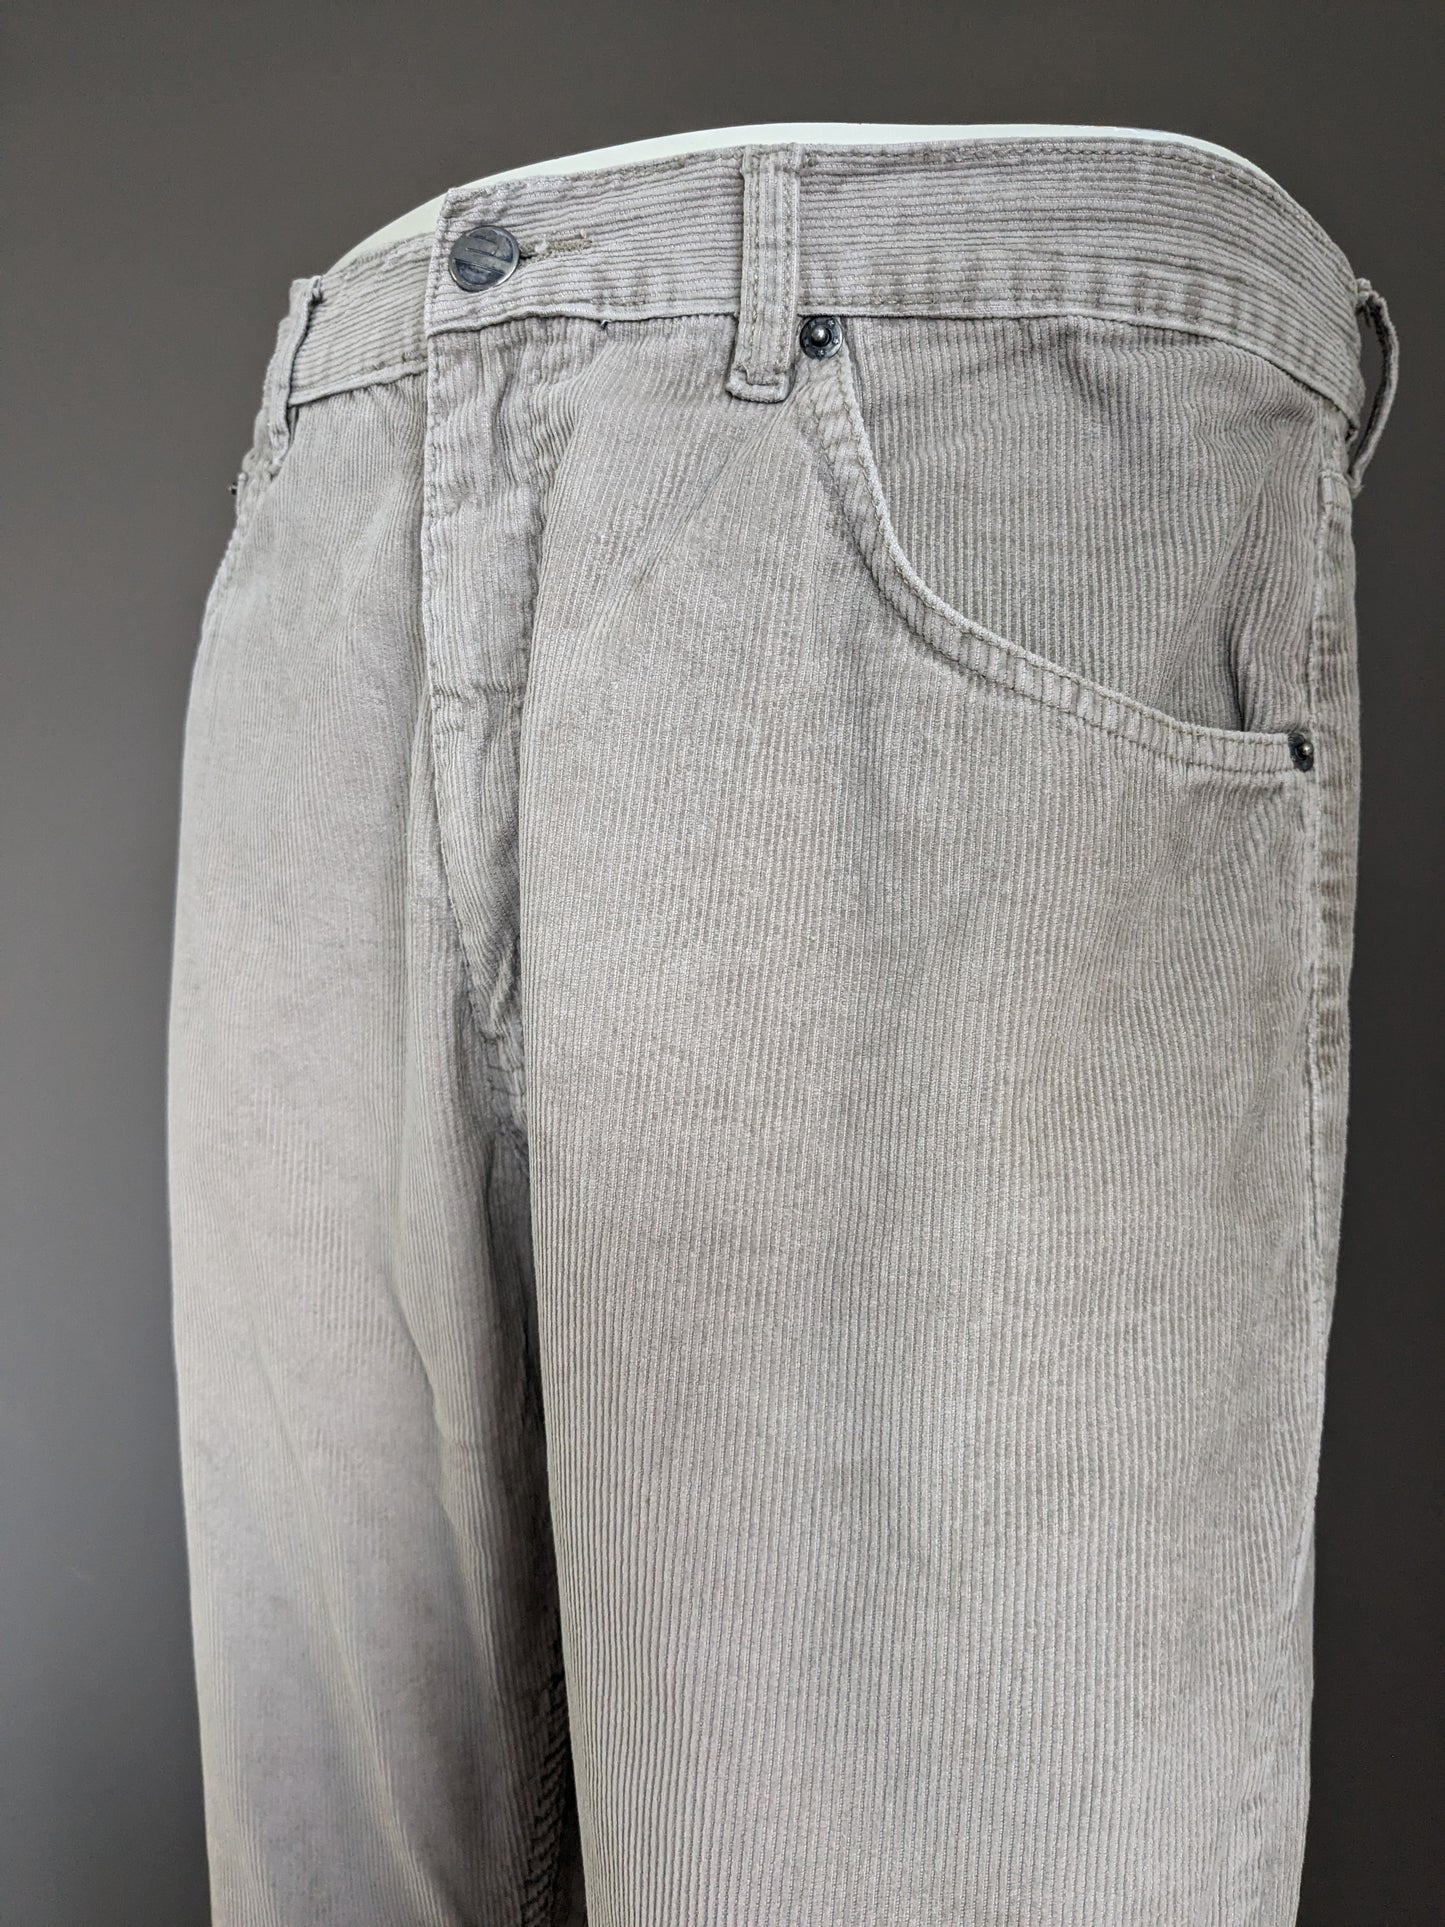 Pantalones de costillas de cañón vintage. Beige. Tamaño W34 - L30.